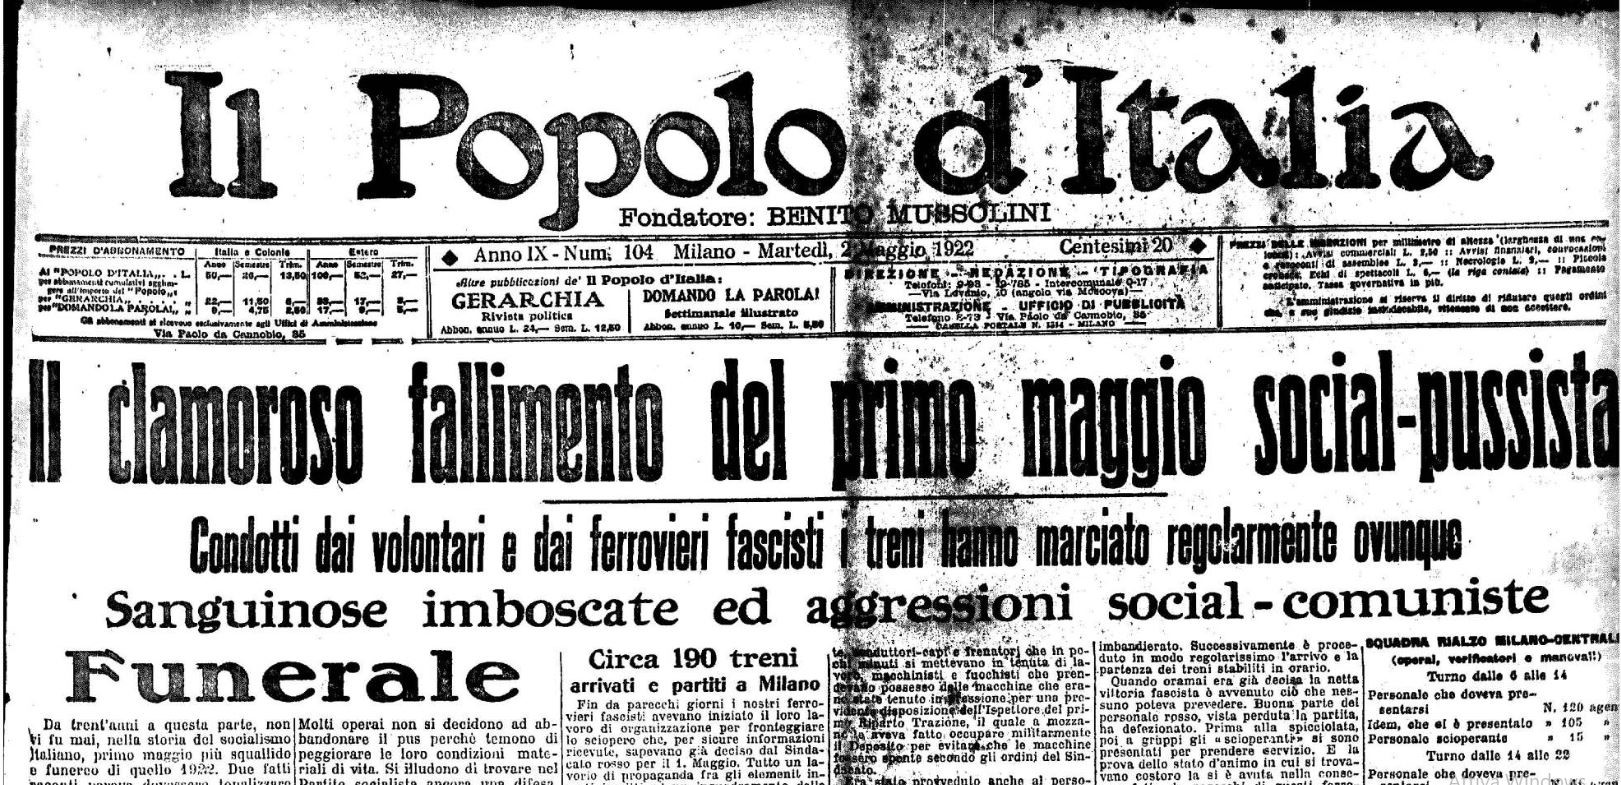 L’agguato di Megliadino del 1° maggio 1922 – Pietro Cappellari